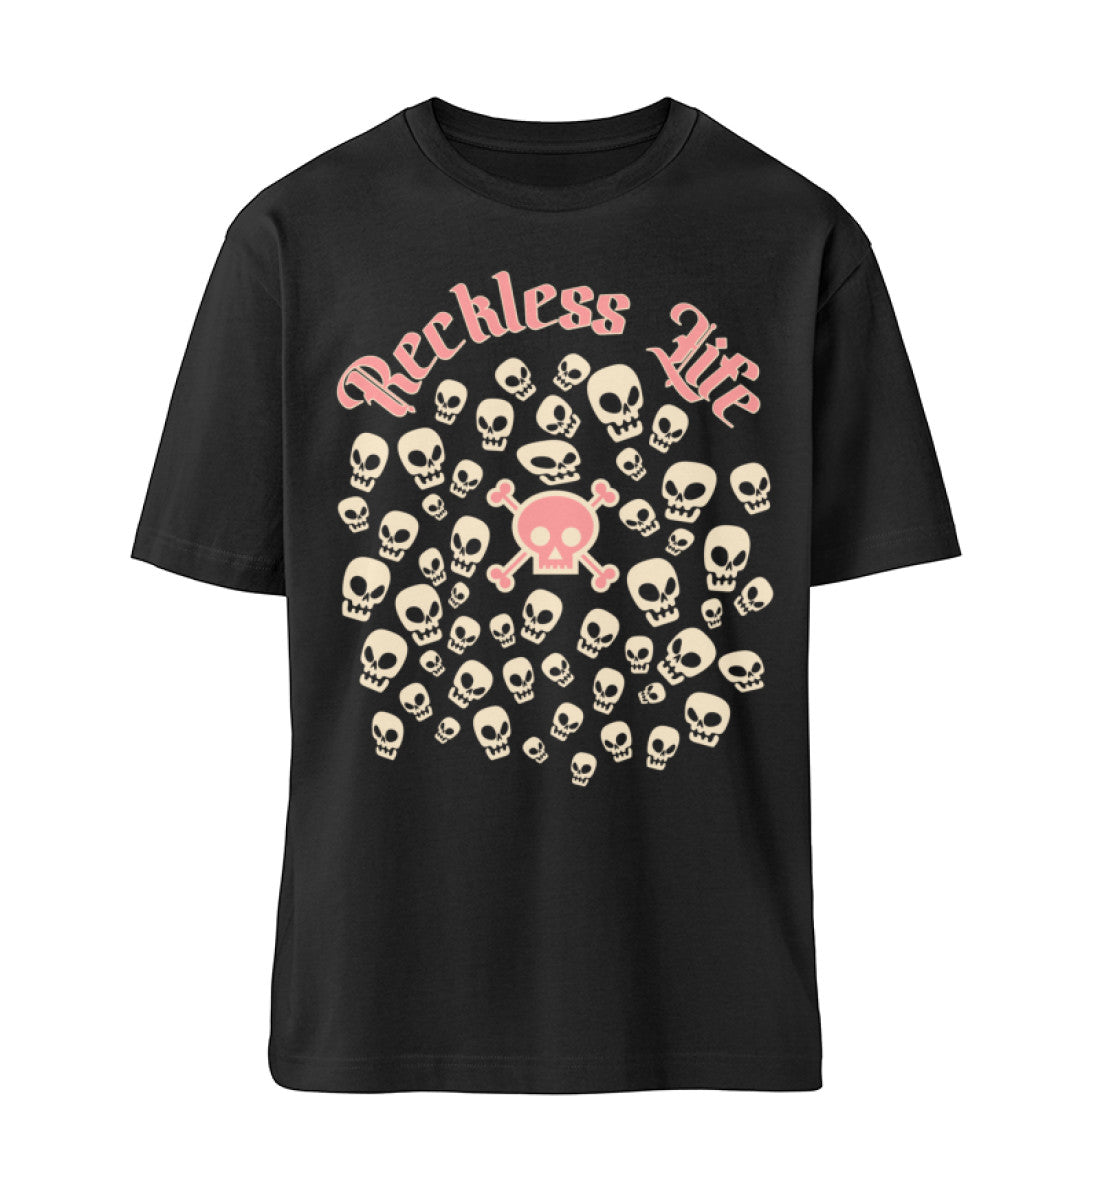 Schwarzes T-Shirt Unisex Relaxed Fit für Frauen und Männer bedruckt mit dem Design der Roger Rockawoo Kollektion reckless life